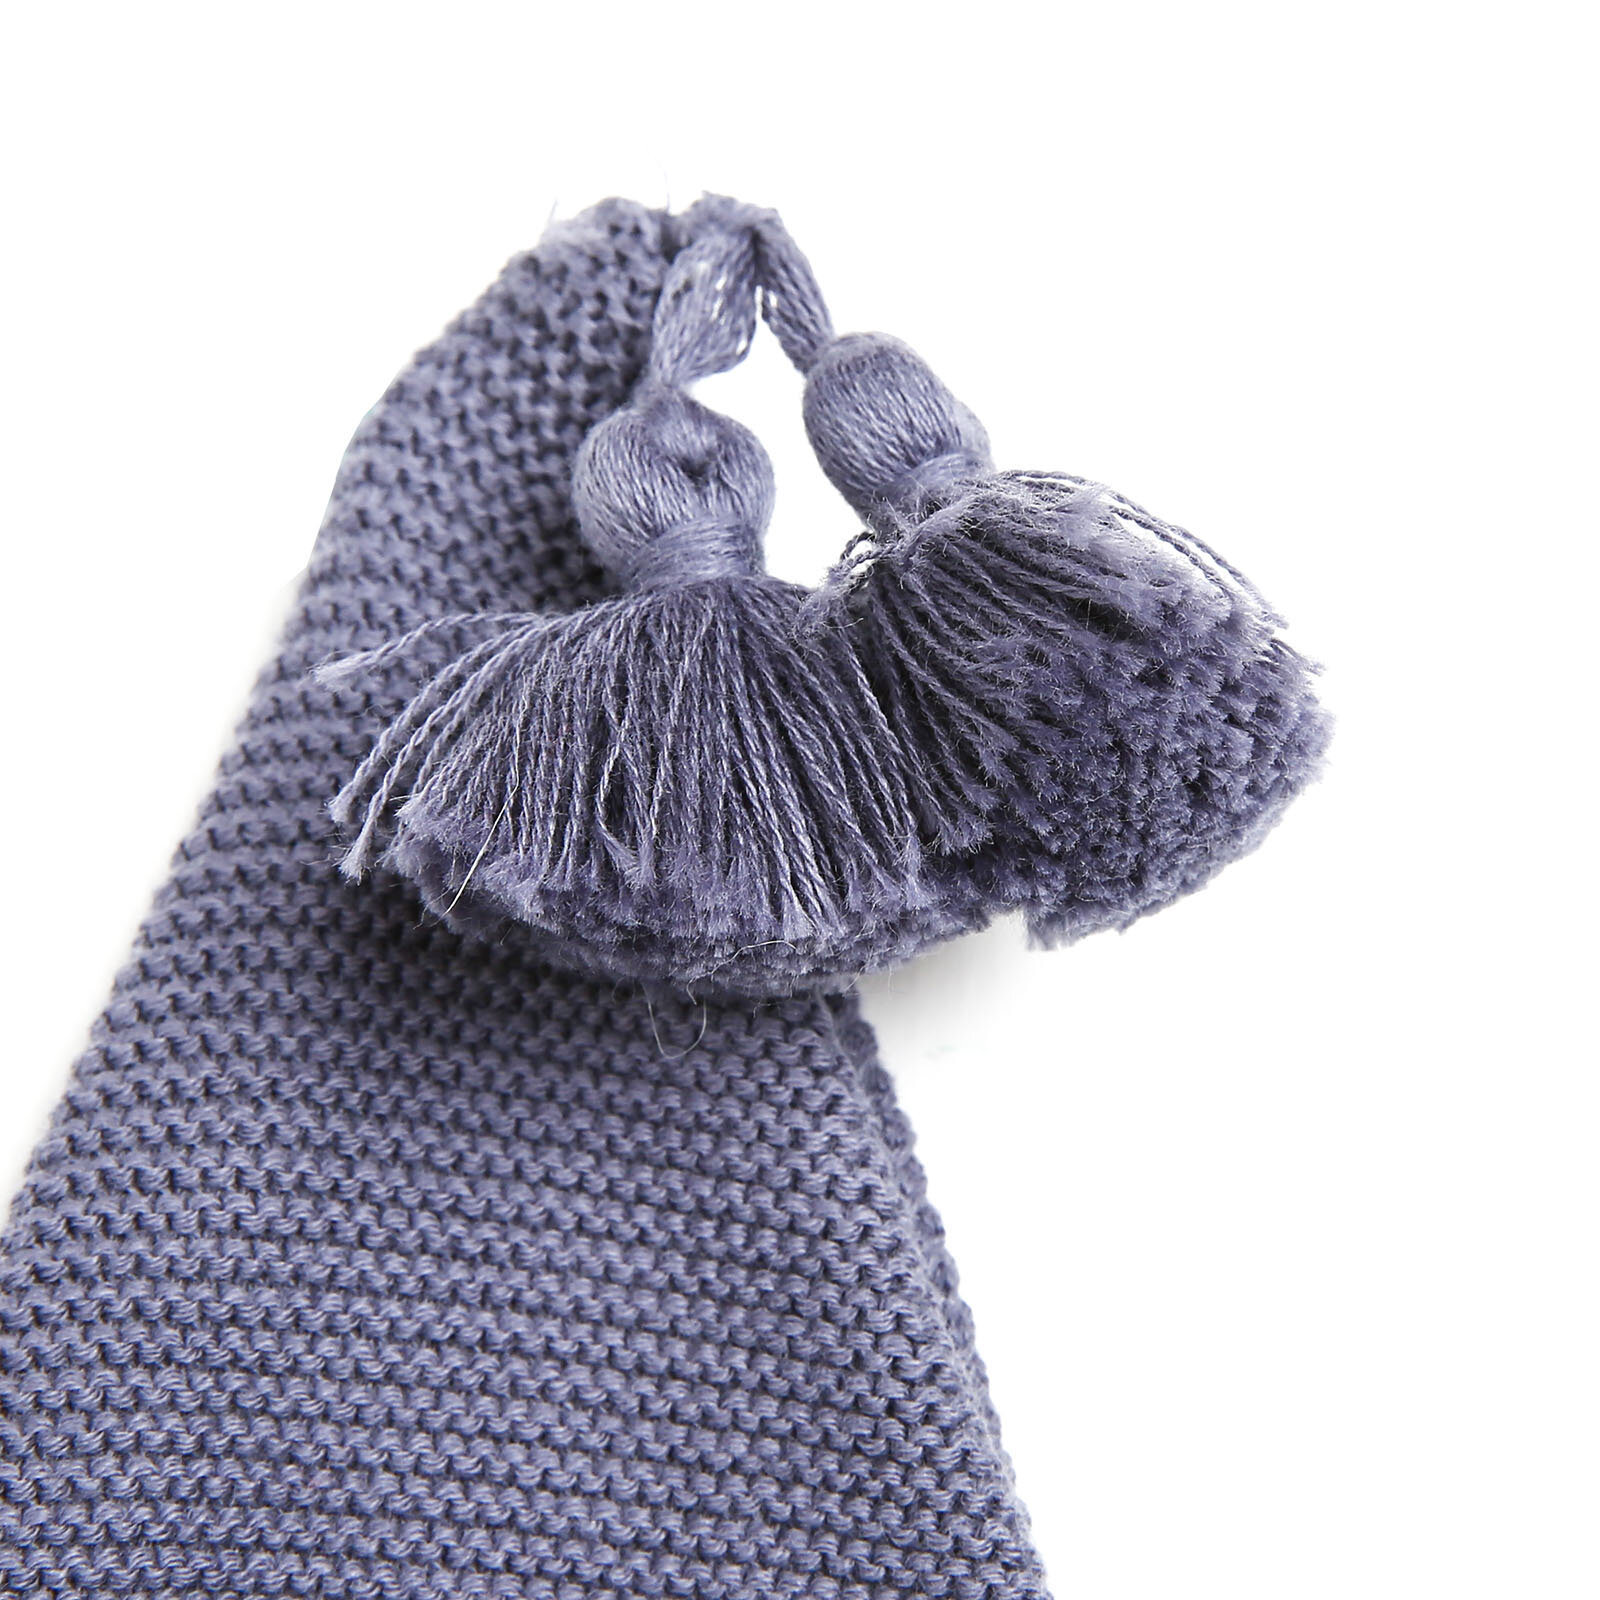 Yenidoğan Düğme Detaylı Triko Tulum-Şapka Set